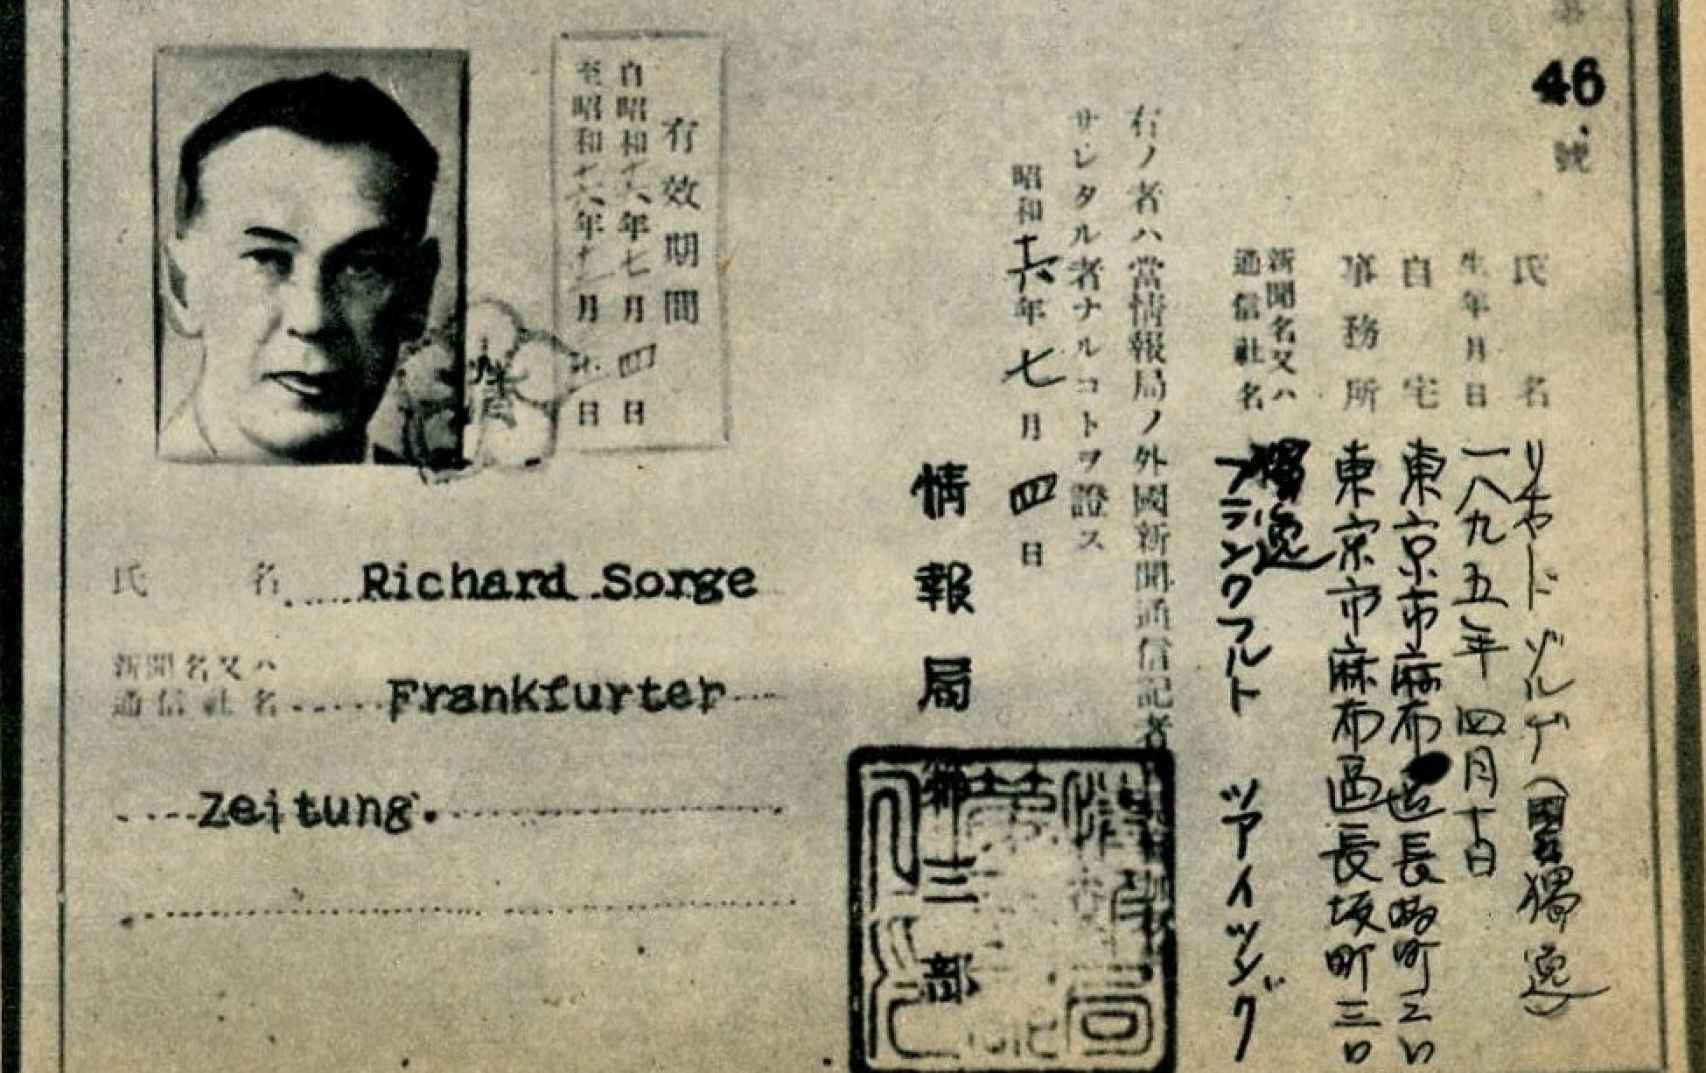 ase de prensa japonés utilizado por Sorge.